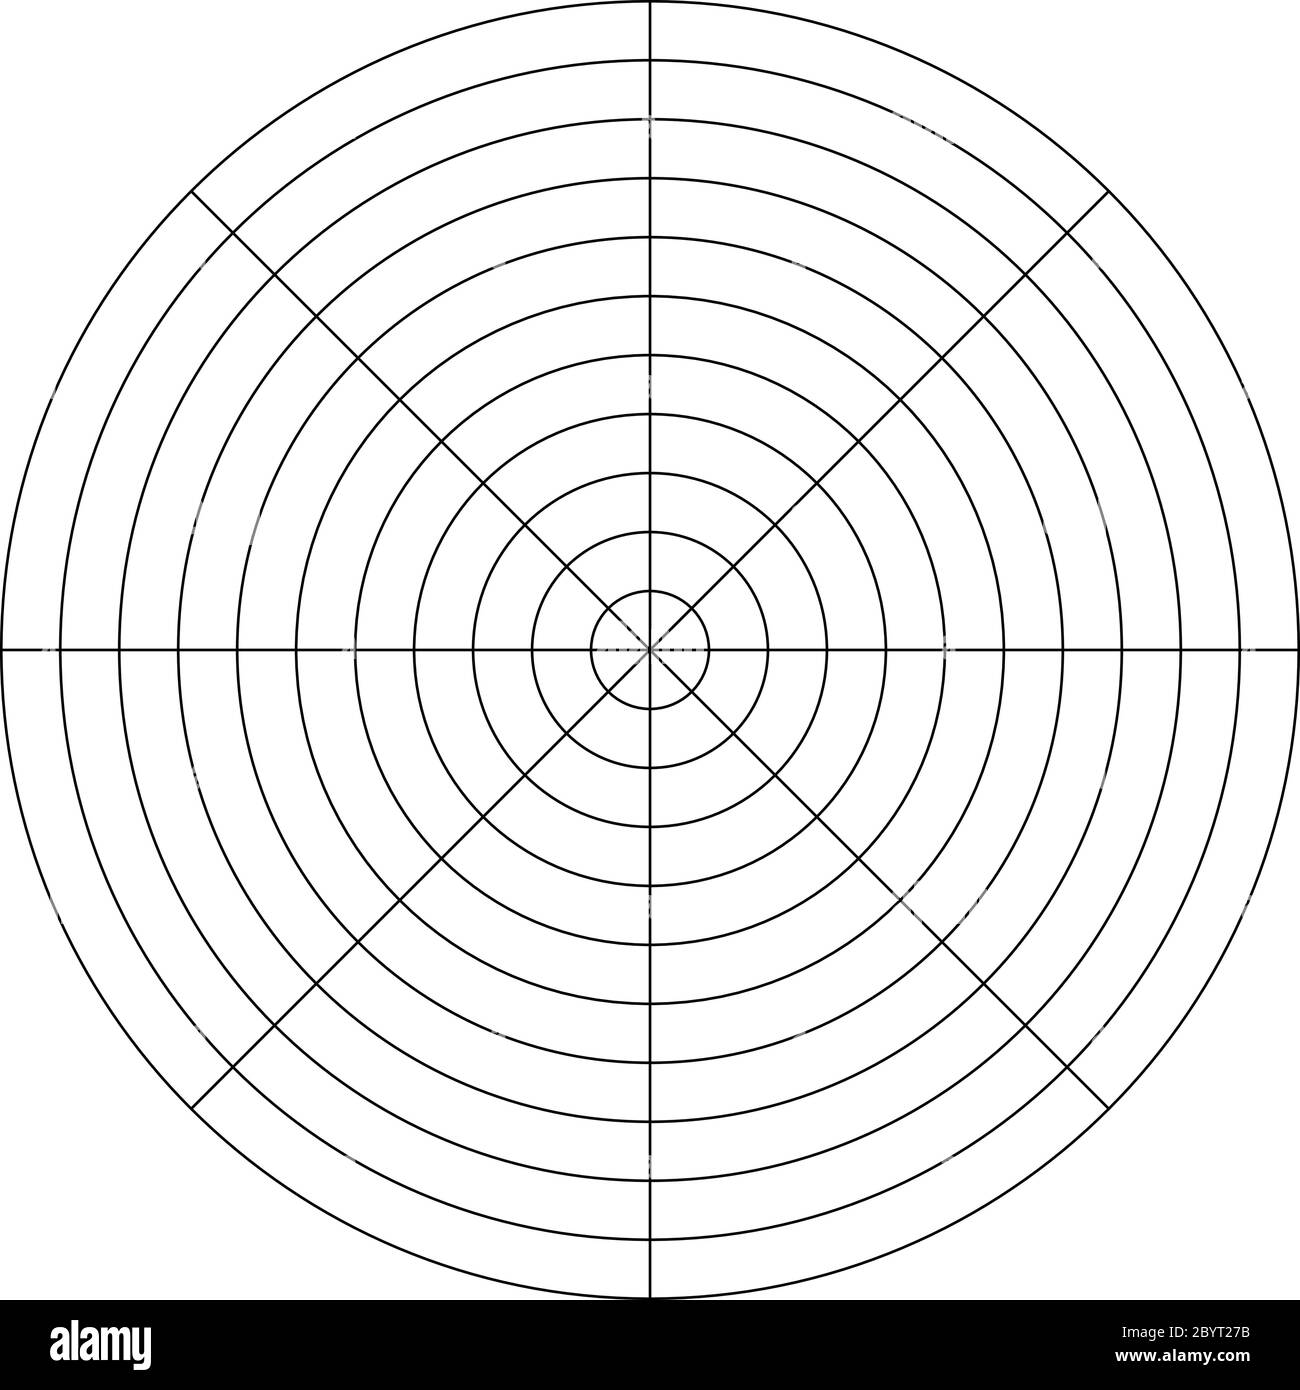 Polares Gitter aus 20 konzentrischen Kreisen und 20-Grad-Schritten Throughout Blank Wheel Of Life Template